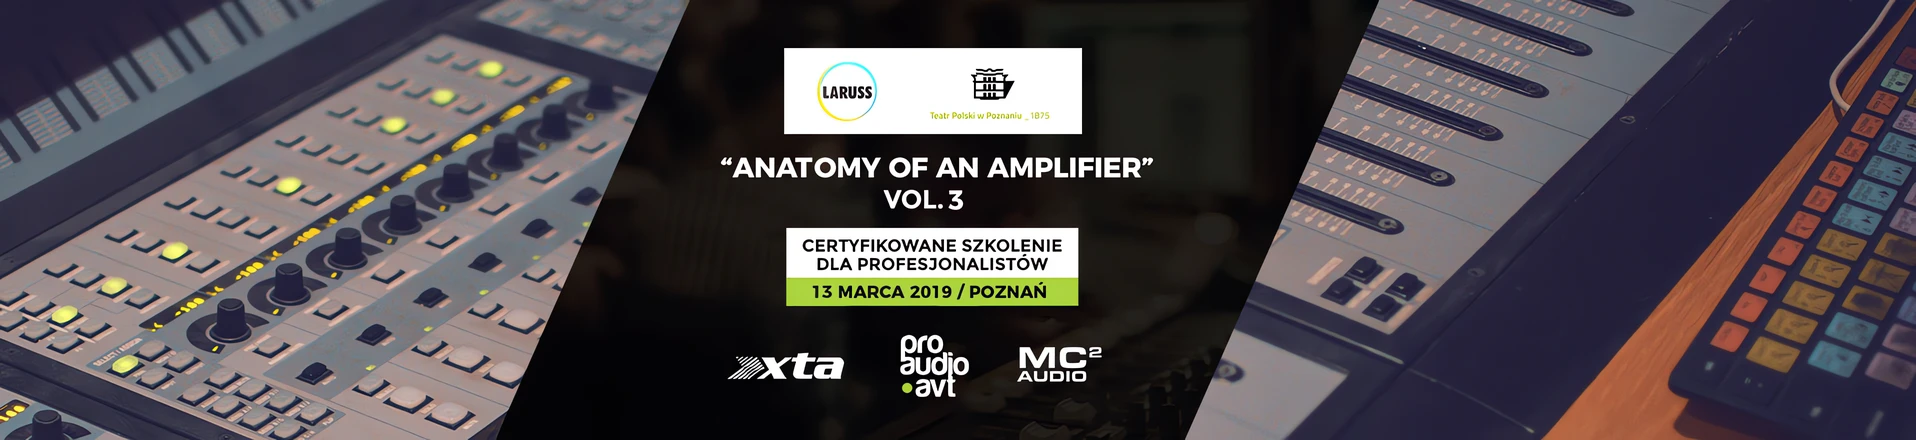 Certyfikowane szkolenie z urządzeń MC2 Audio oraz XTA Electronics - Rusza III edycja